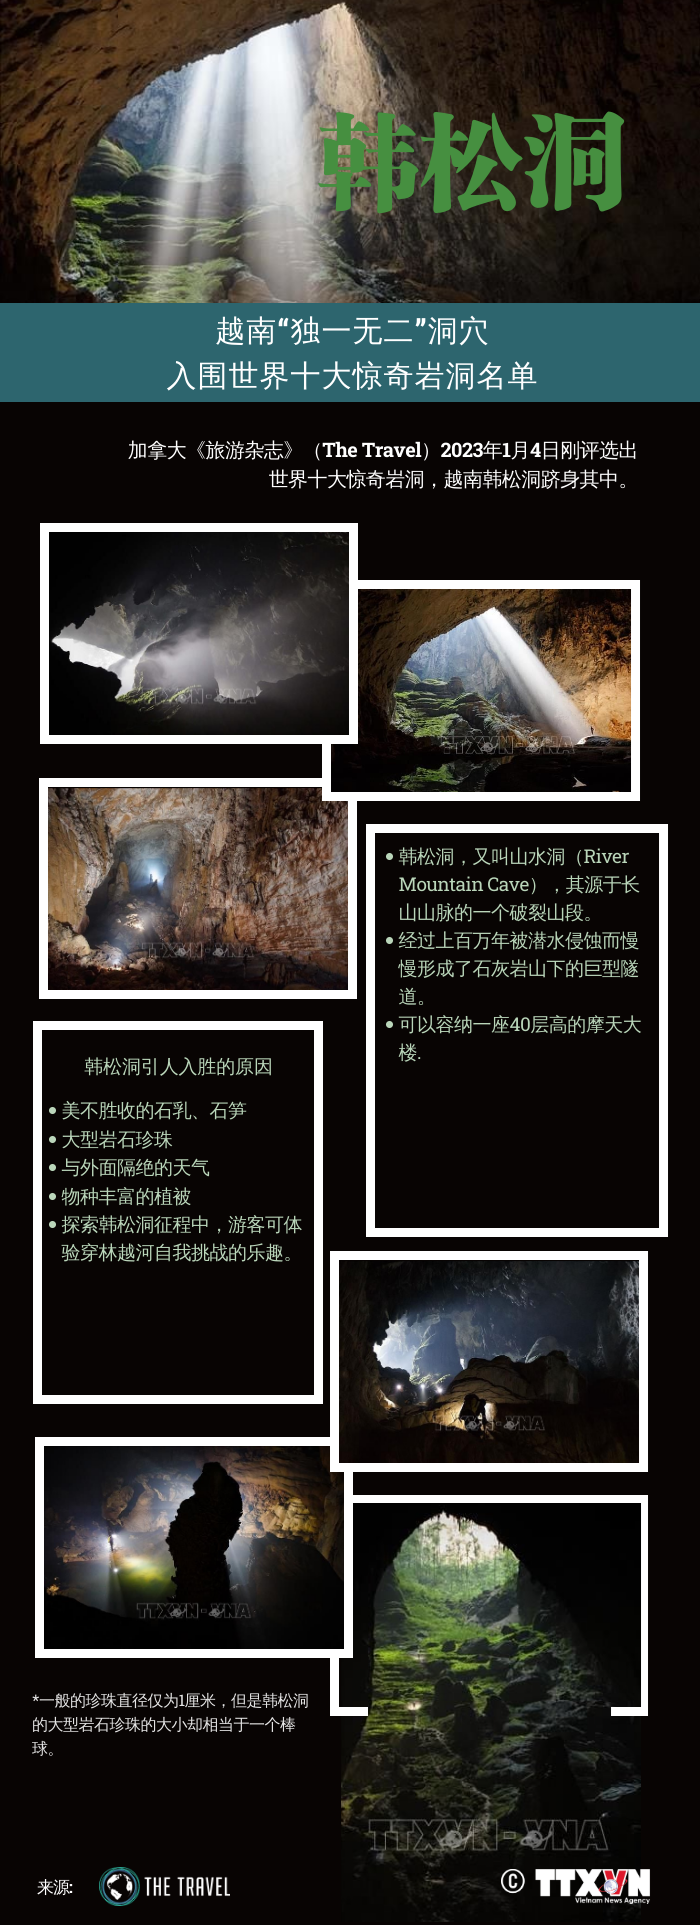 互动图表：越南“独一无二”洞穴 入围世界十大惊奇岩洞名单 hinh anh 1